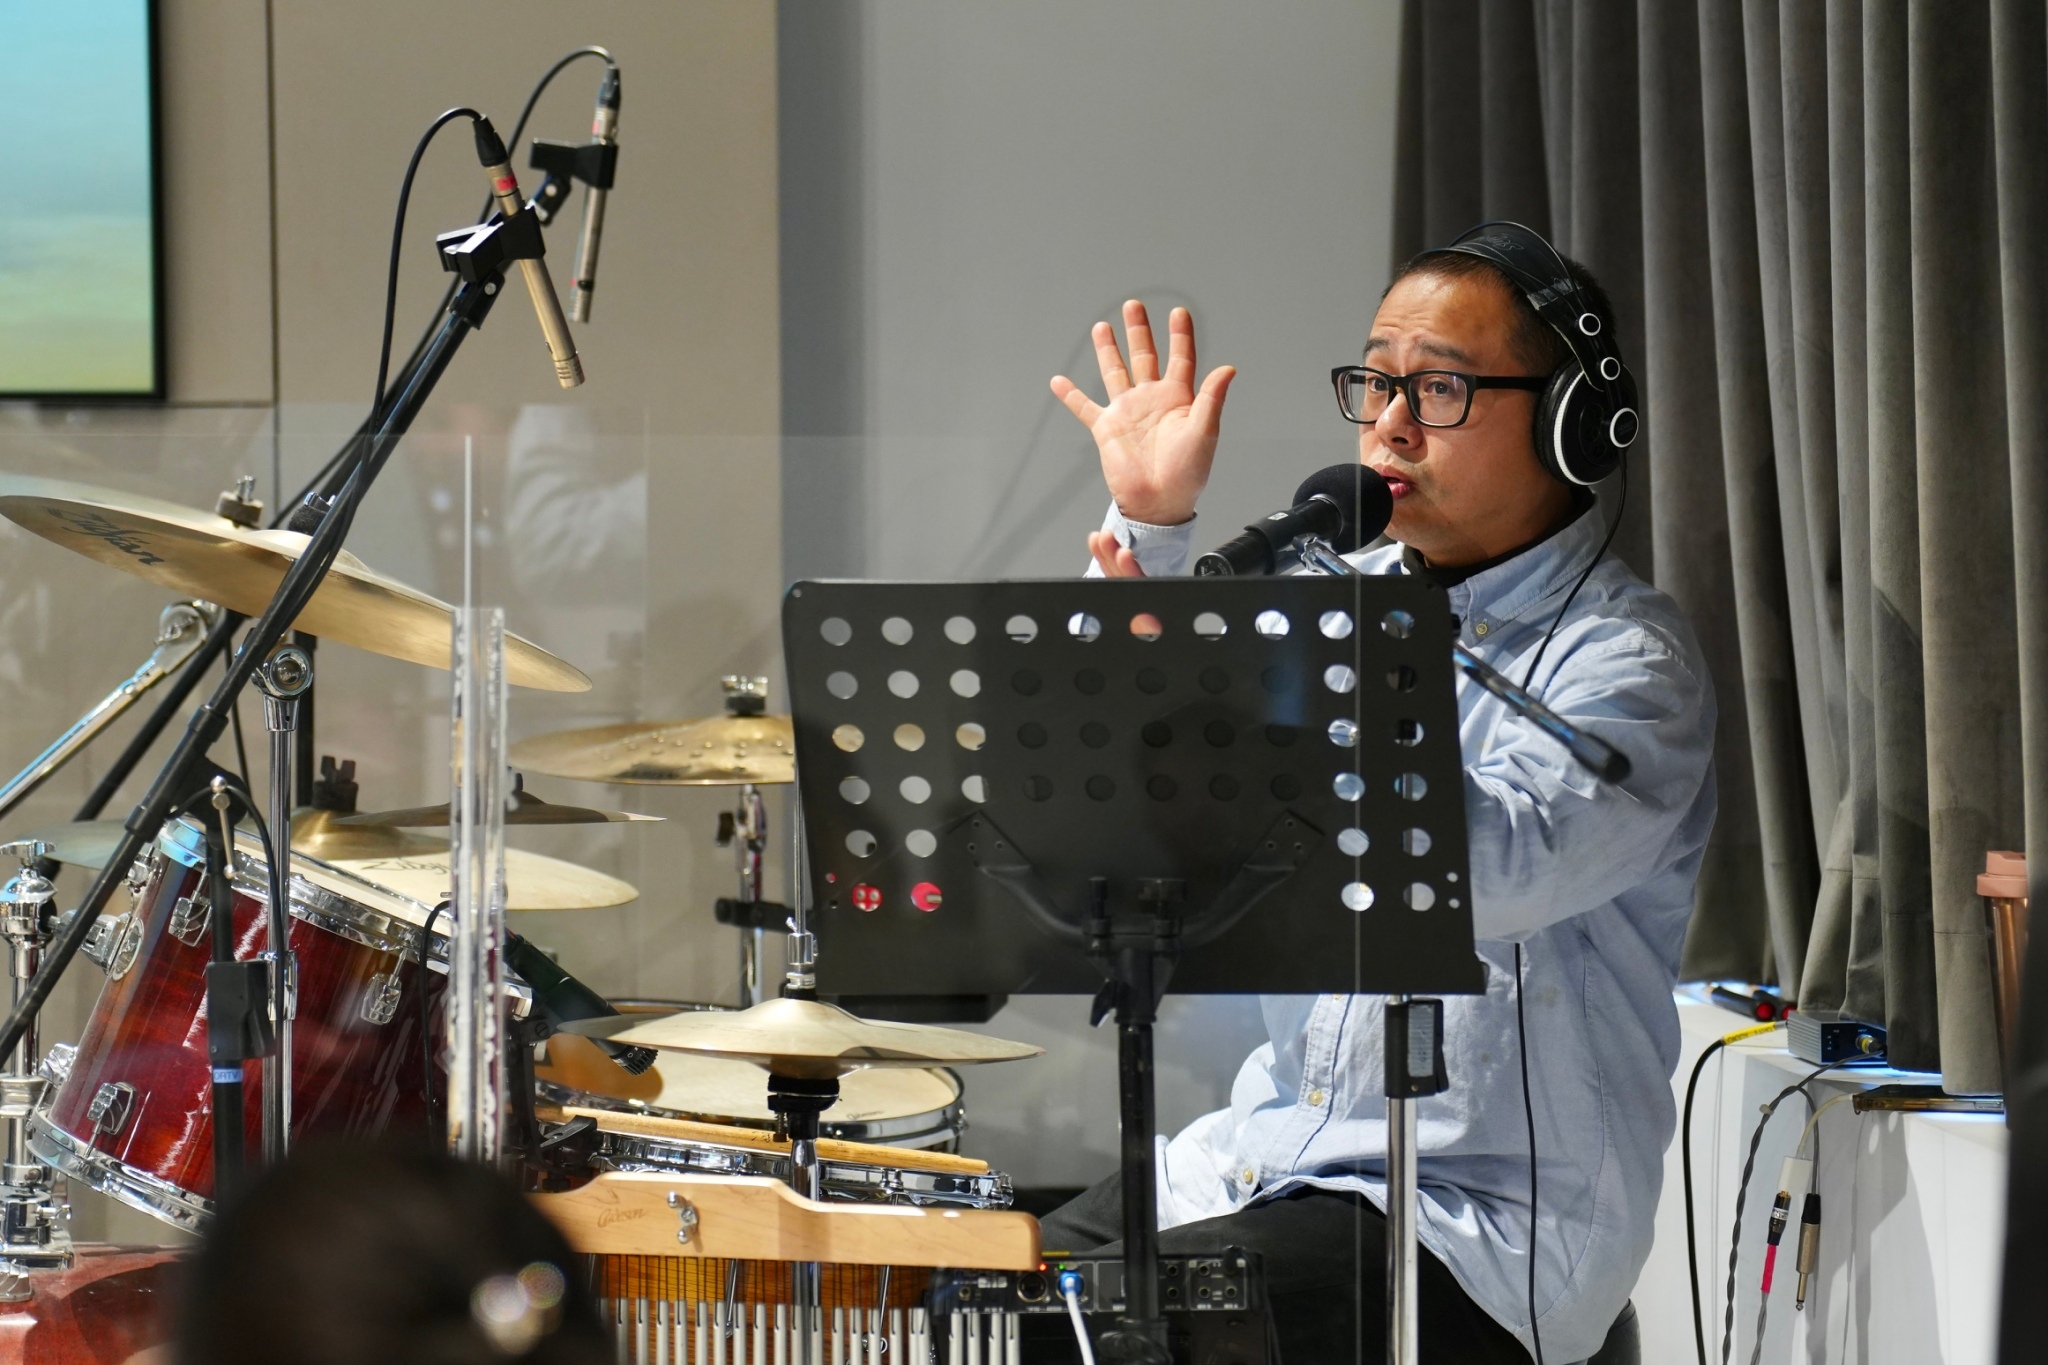 活躍於音樂業界的鼓手郭家昇老師現場親授歌手與樂團配合的要訣。(圖/救世傳播協會提供)